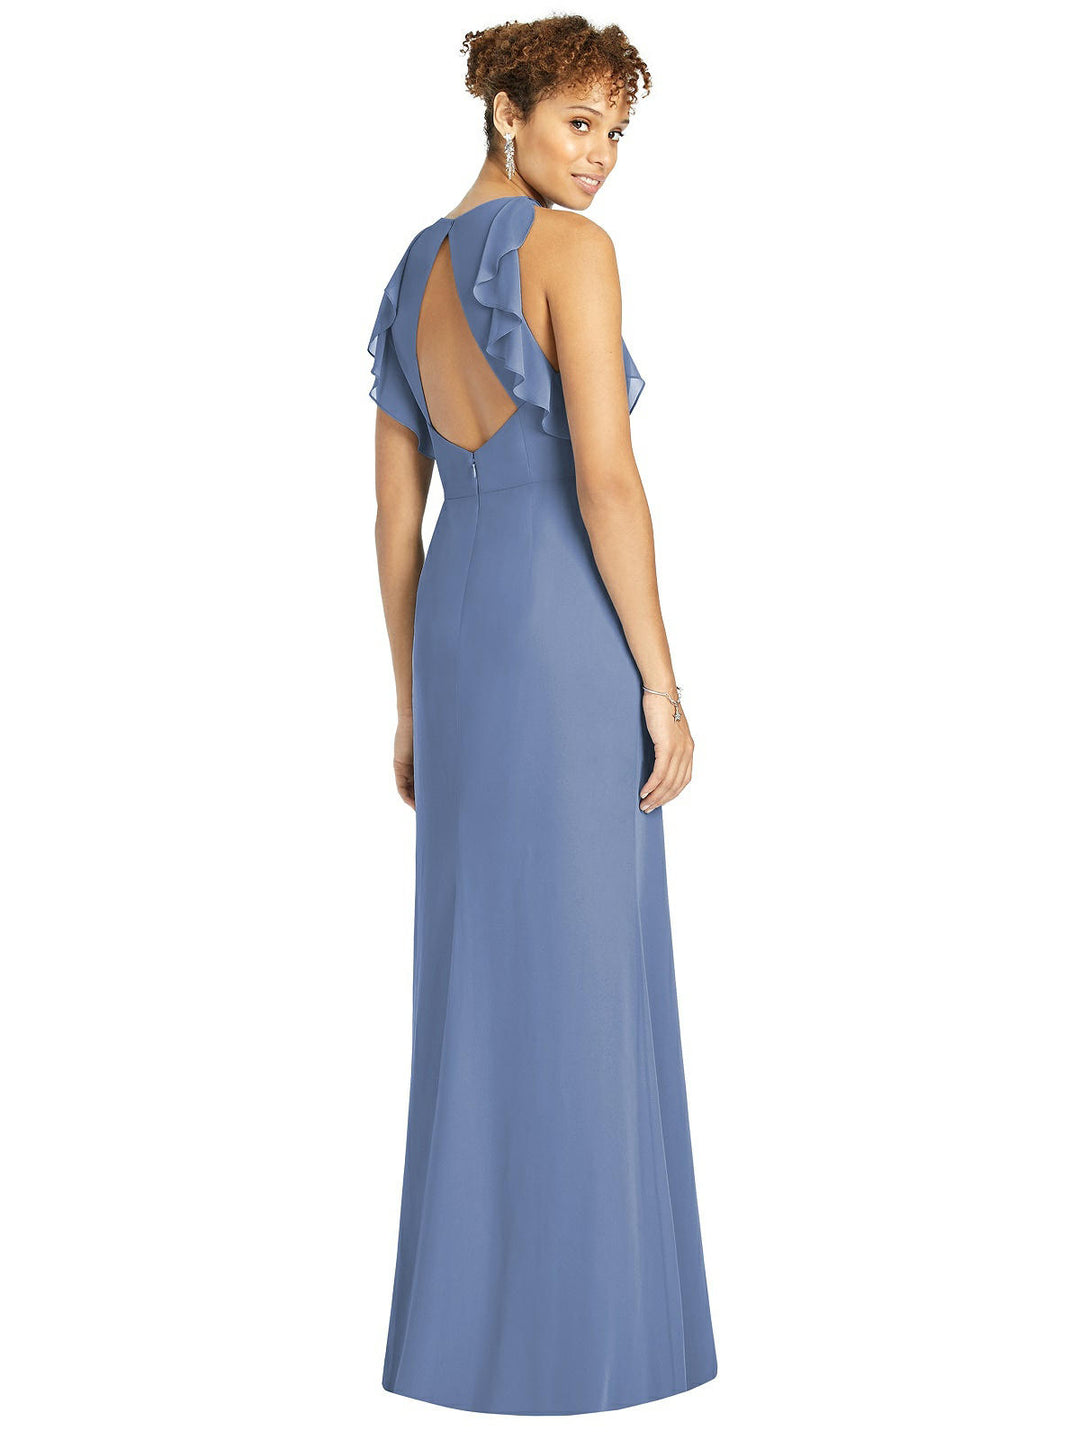 Dessy Dress Style 4541 Size 10